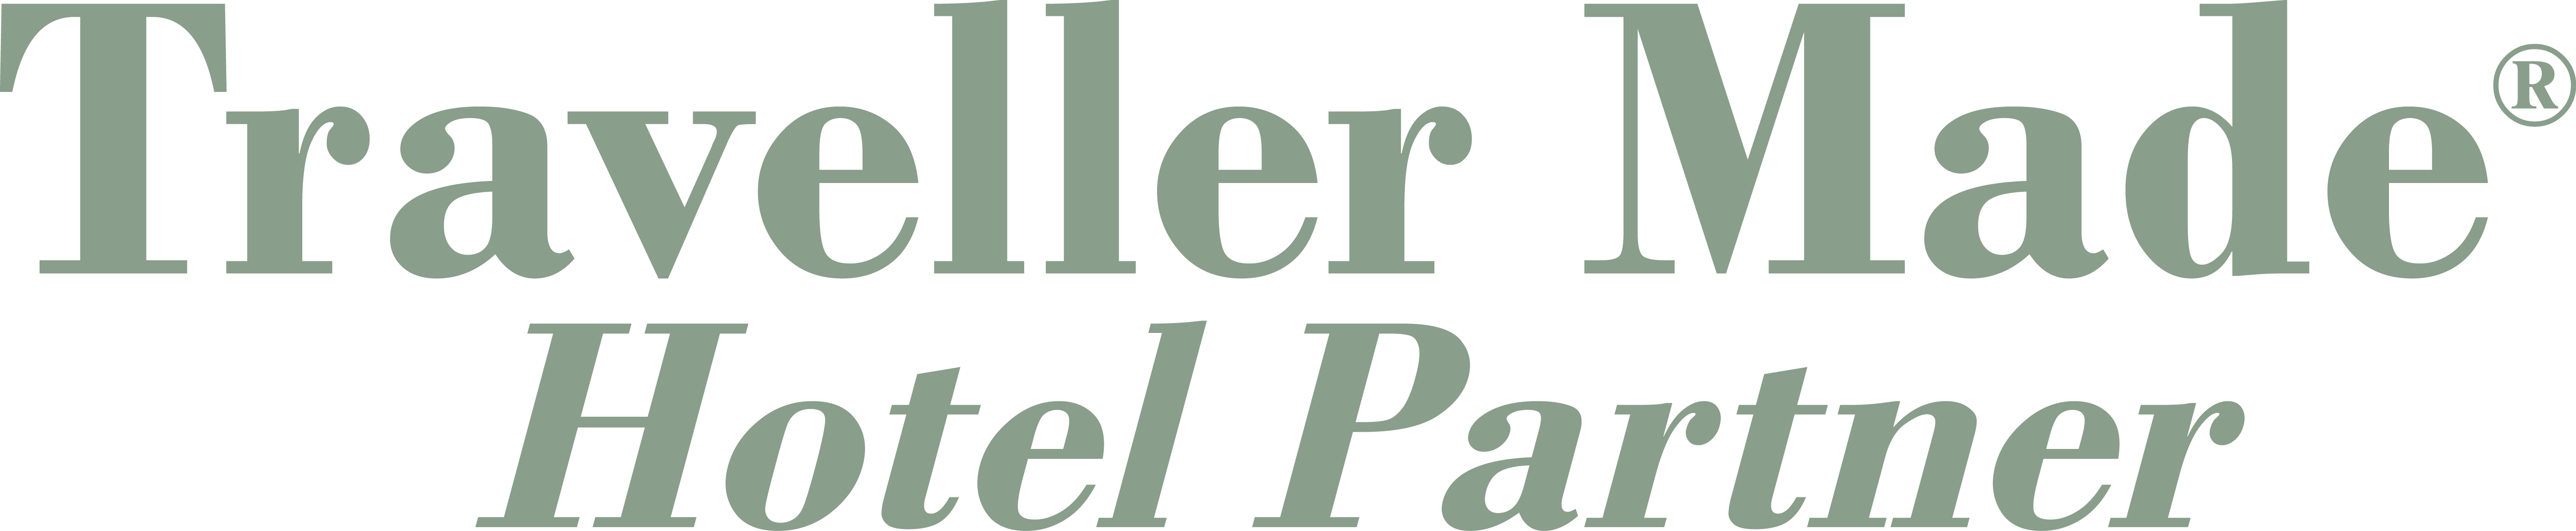 Traveler Made Partner logo